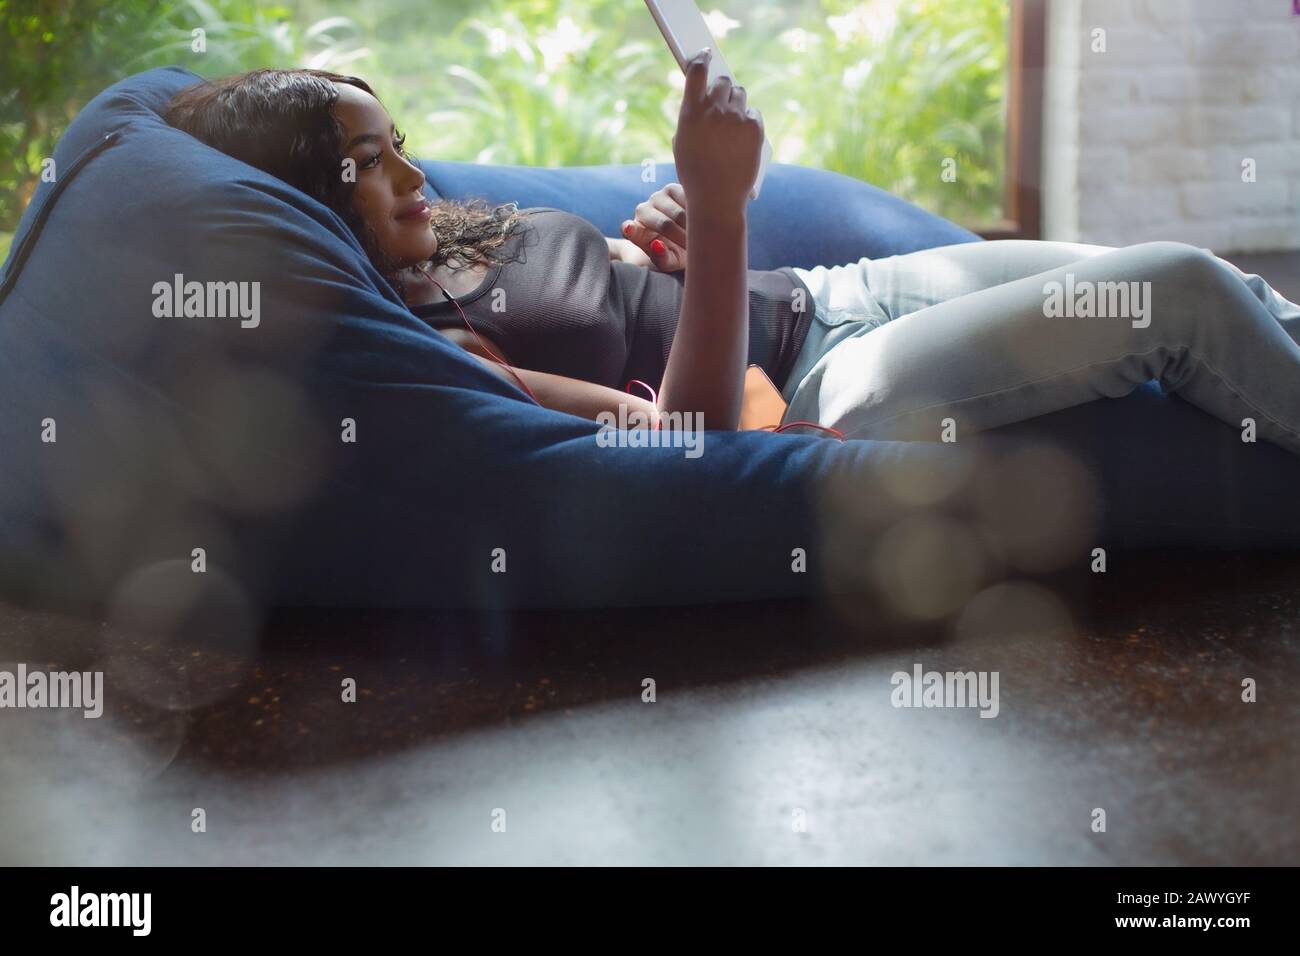 Junge Frau, die sich mit einem digitalen Tablett im Beansack-Stuhl entspannen kann Stockfoto